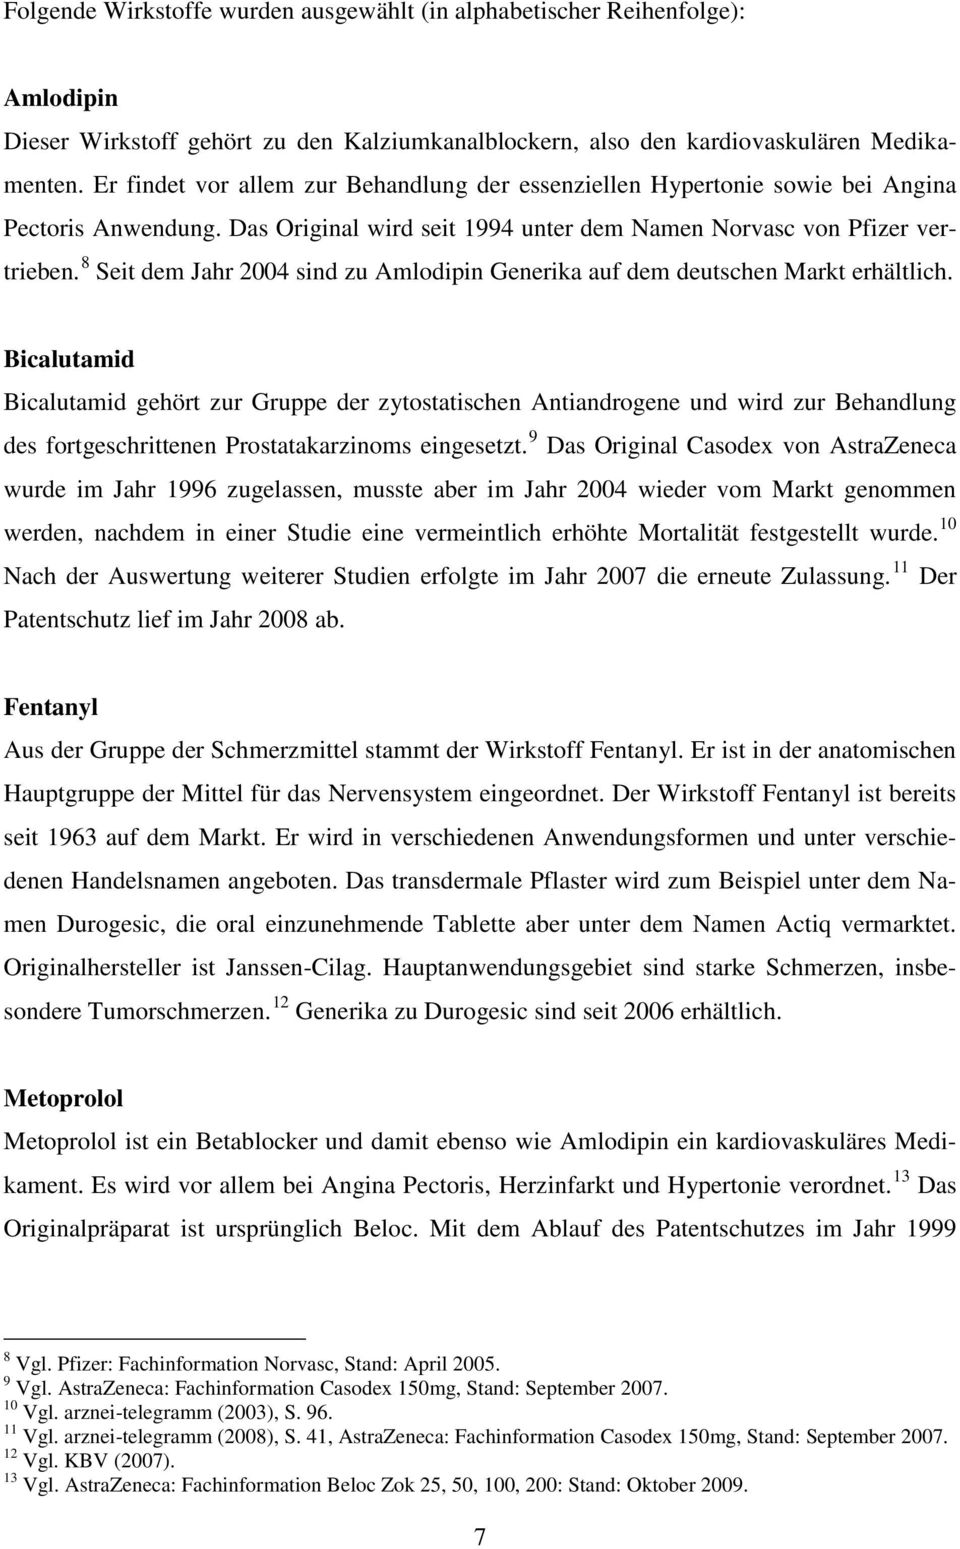 8 Seit dem Jahr 2004 sind zu Amlodipin Generika auf dem deutschen Markt erhältlich.